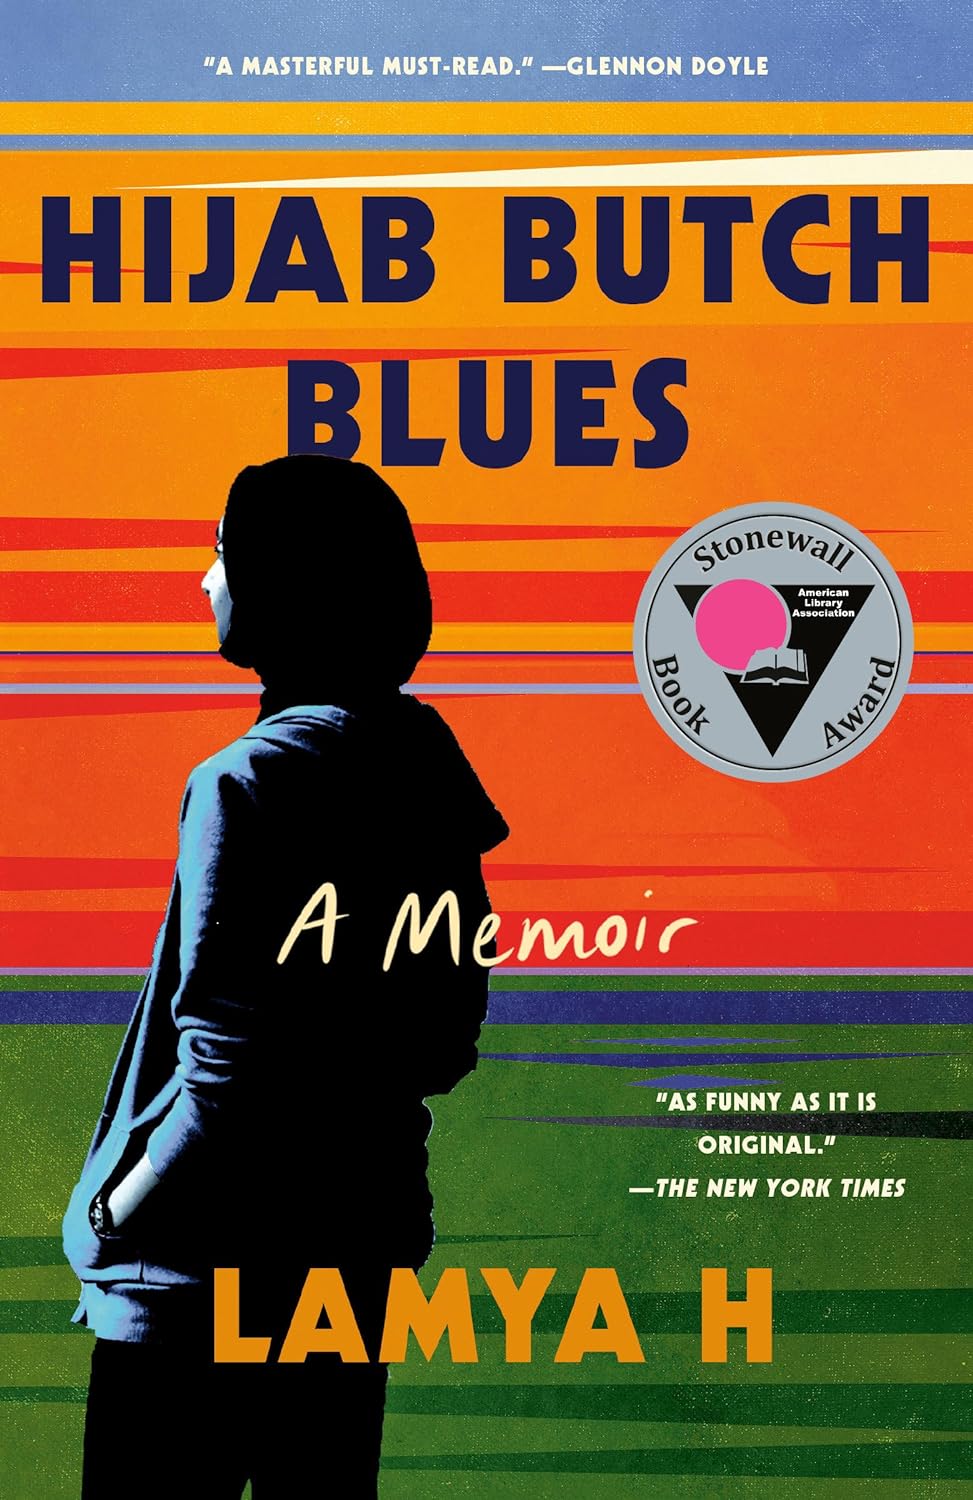 Hijab Butch Blues: A Memoir - Lamya H